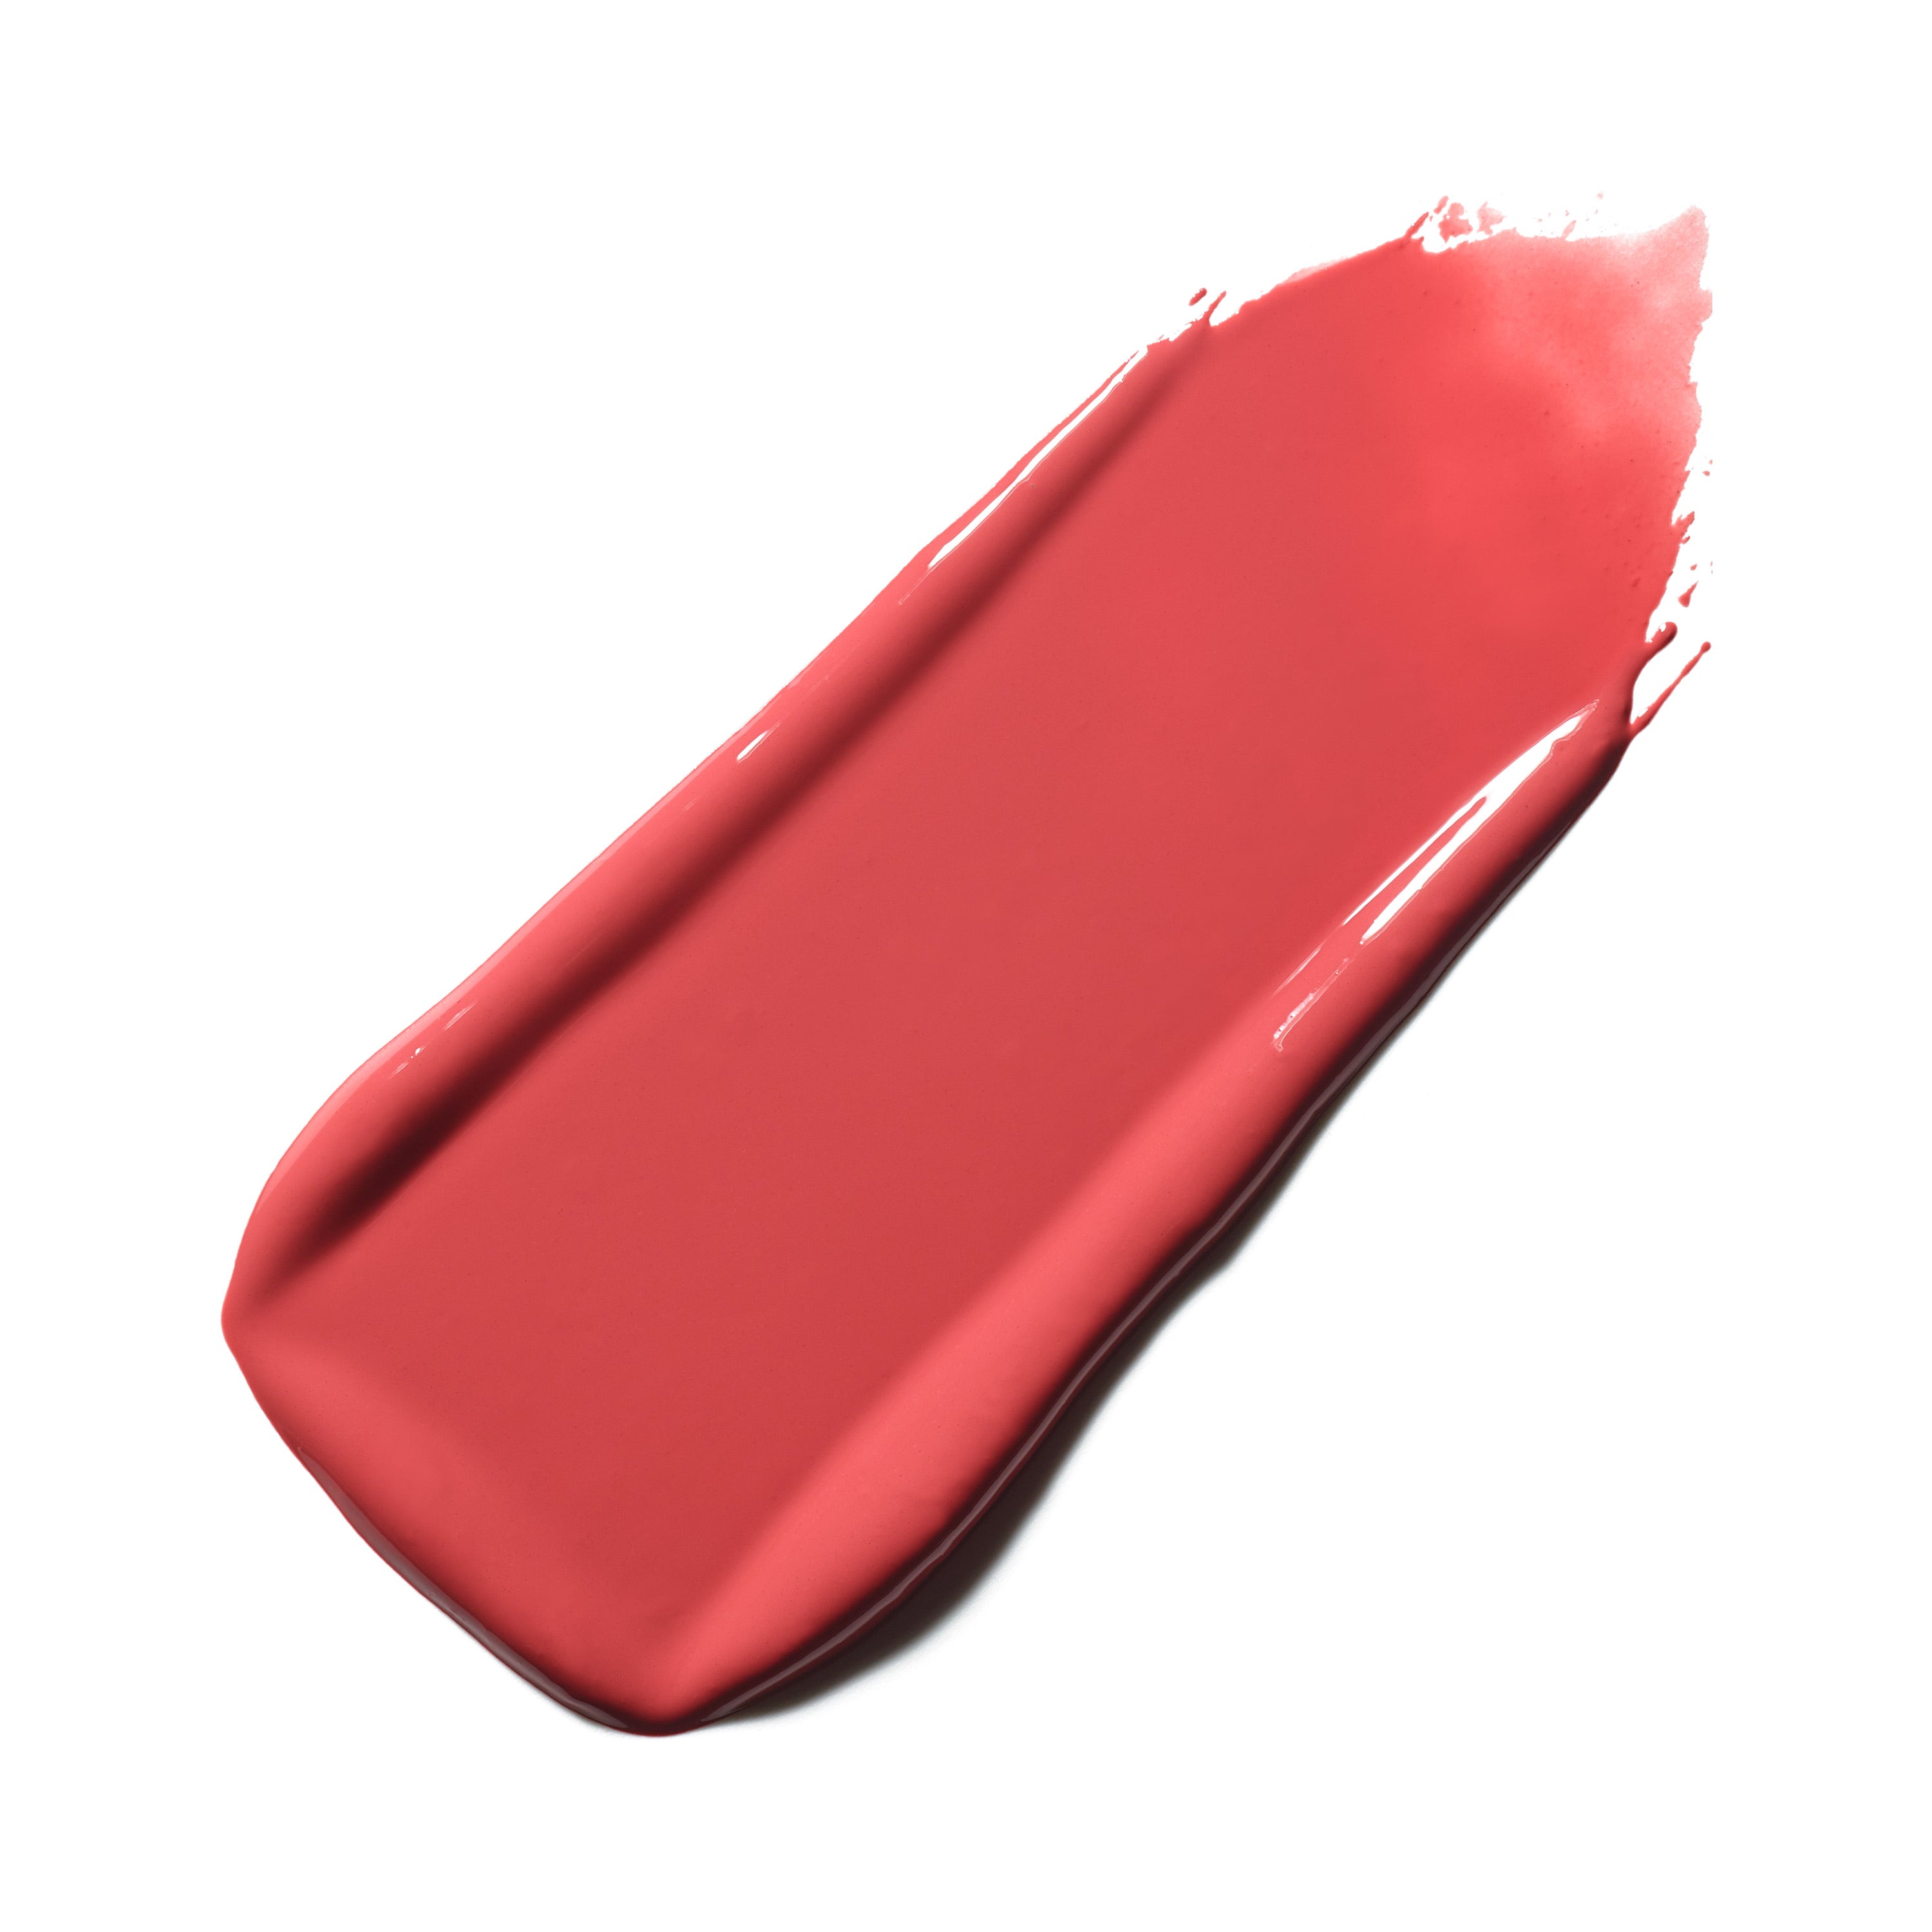 M·A·C Lustreglass Sheer-shine Lipstick